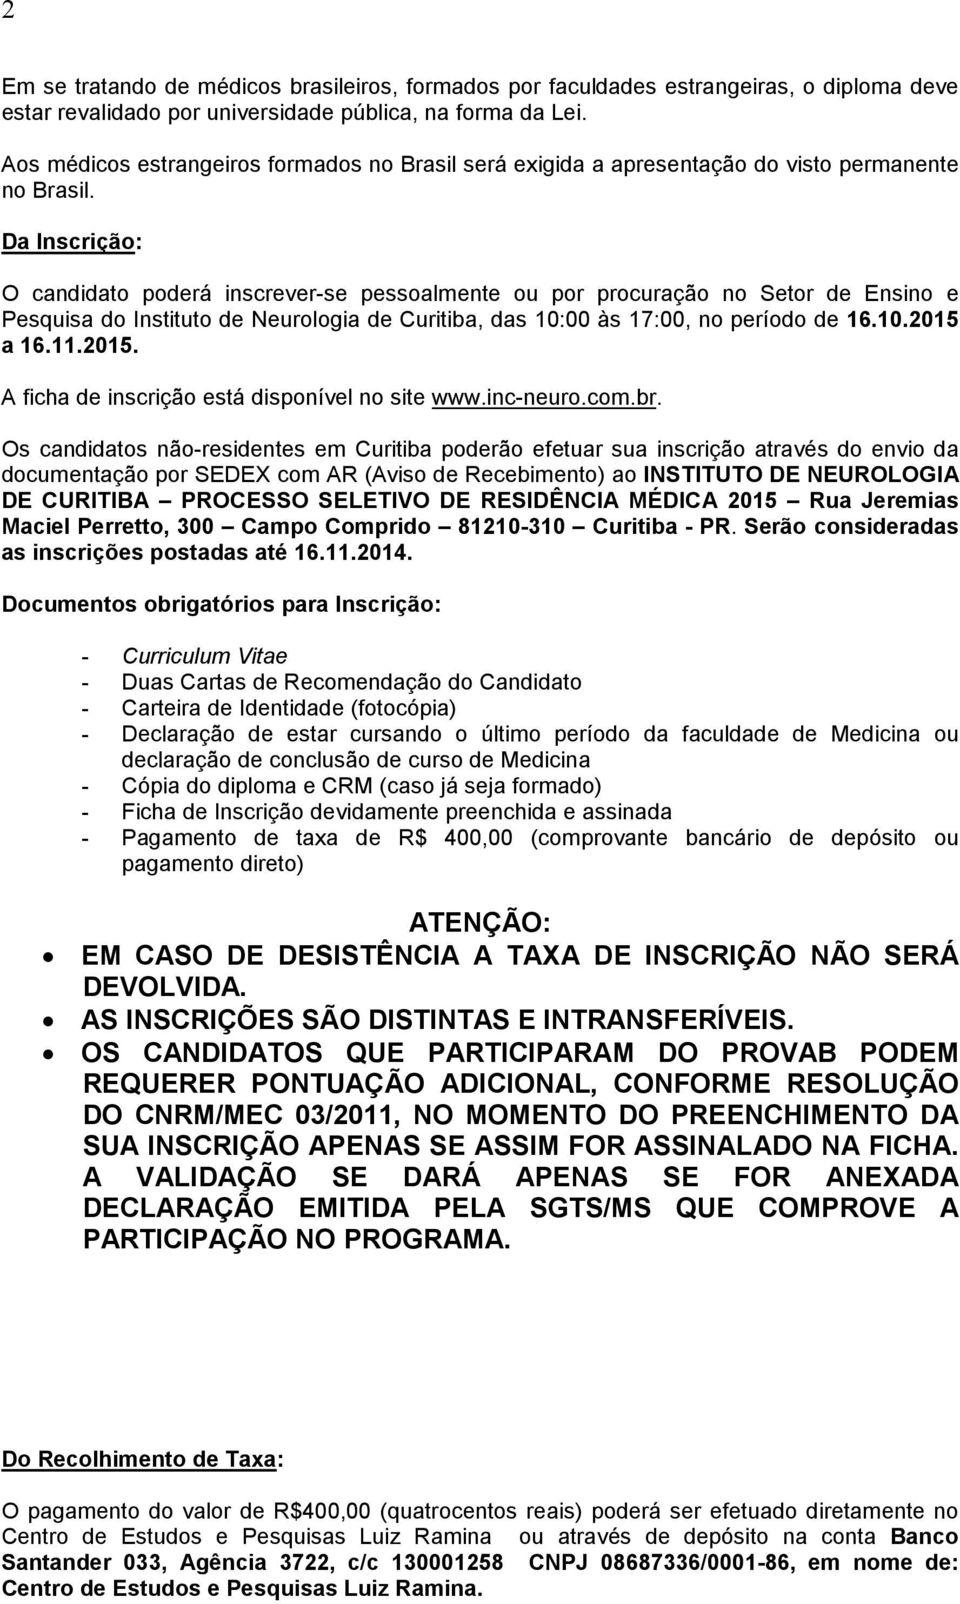 Da Inscrição: O candidato poderá inscrever-se pessoalmente ou por procuração no Setor de Ensino e Pesquisa do Instituto de Neurologia de Curitiba, das 10:00 às 17:00, no período de 16.10.2015 a 16.11.